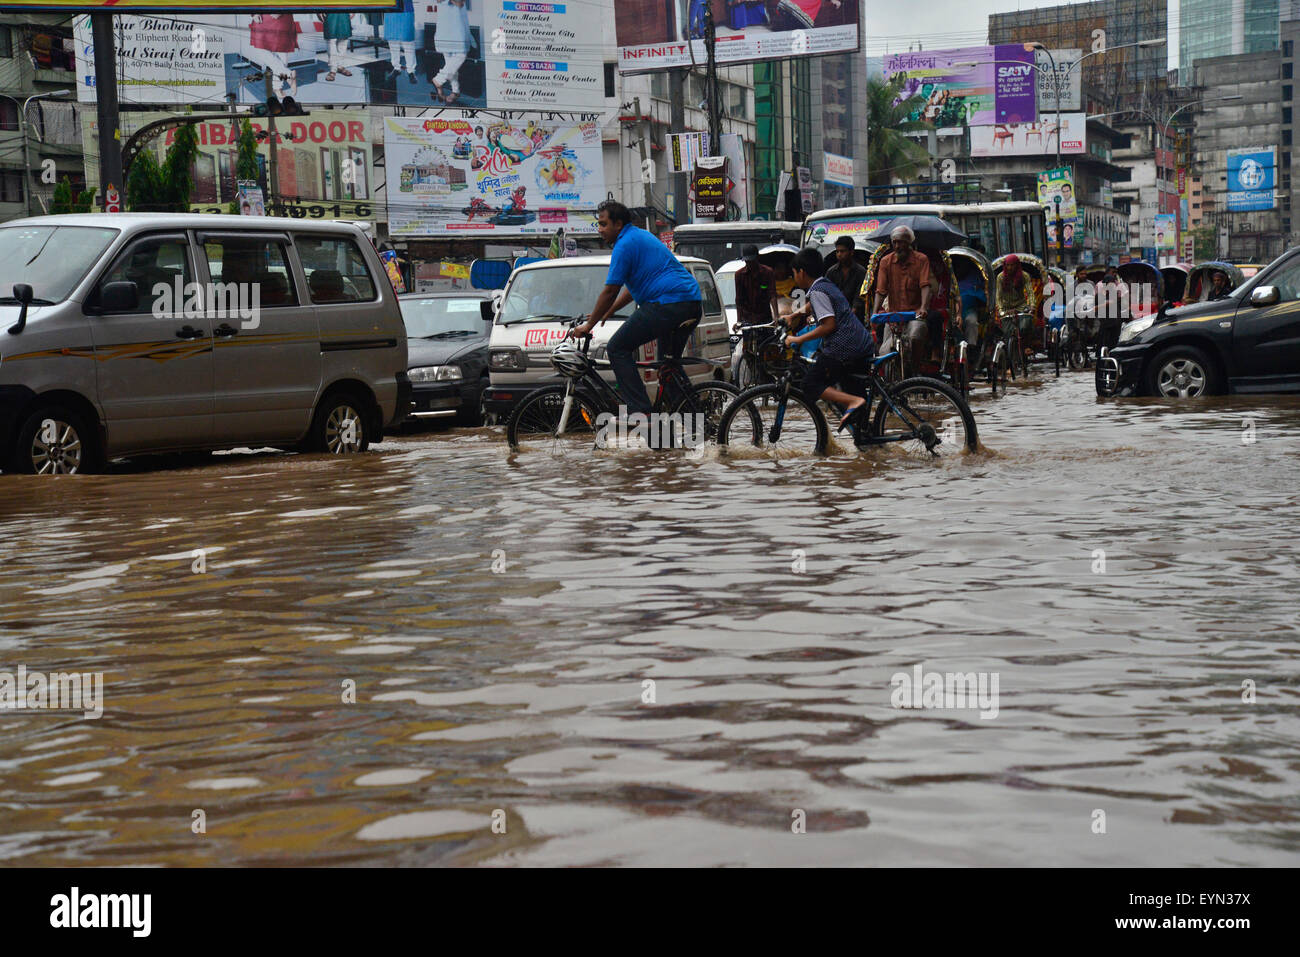 Dhaka, Bangladesch. 1. August 2015. Fahrzeuge und Rikschas versuchen Sie mit Passagieren durch die überfluteten Straßen von Dhaka nach starke Regenfällen fast-Stillstand verursacht. Am 1. August 2015 nach schweren Monsun Regenfälle verursacht überschwemmte die meisten des Bereichs in der Hauptstadt Dhaka in Bangladesch. Straßen wurden teilweise unter Wasser machen Reisen gefährlich. Eine Reihe von Fahrradrikschas hob im Wasser. Bildnachweis: Mamunur Rashid/Alamy Live-Nachrichten Stockfoto